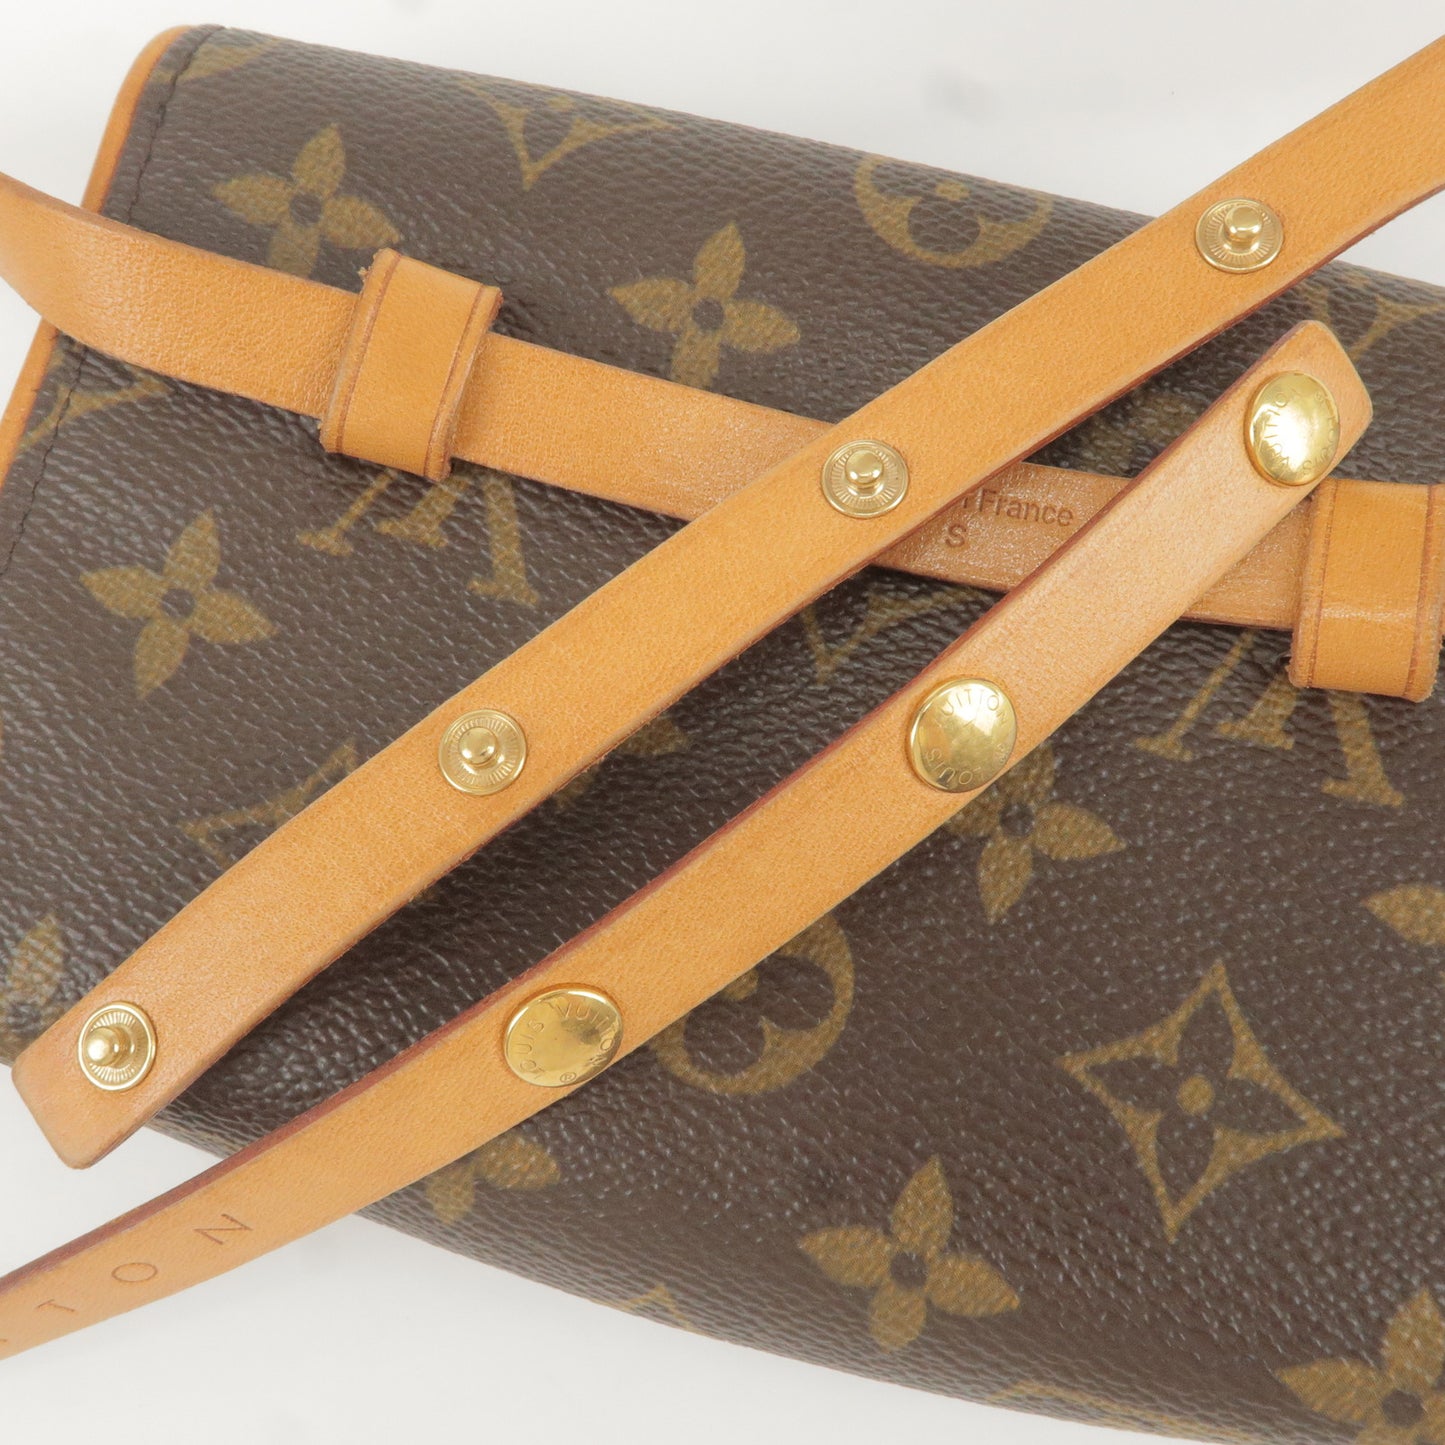 Louis Vuitton Monogram Pochette Florentine Waist Bag S M51855